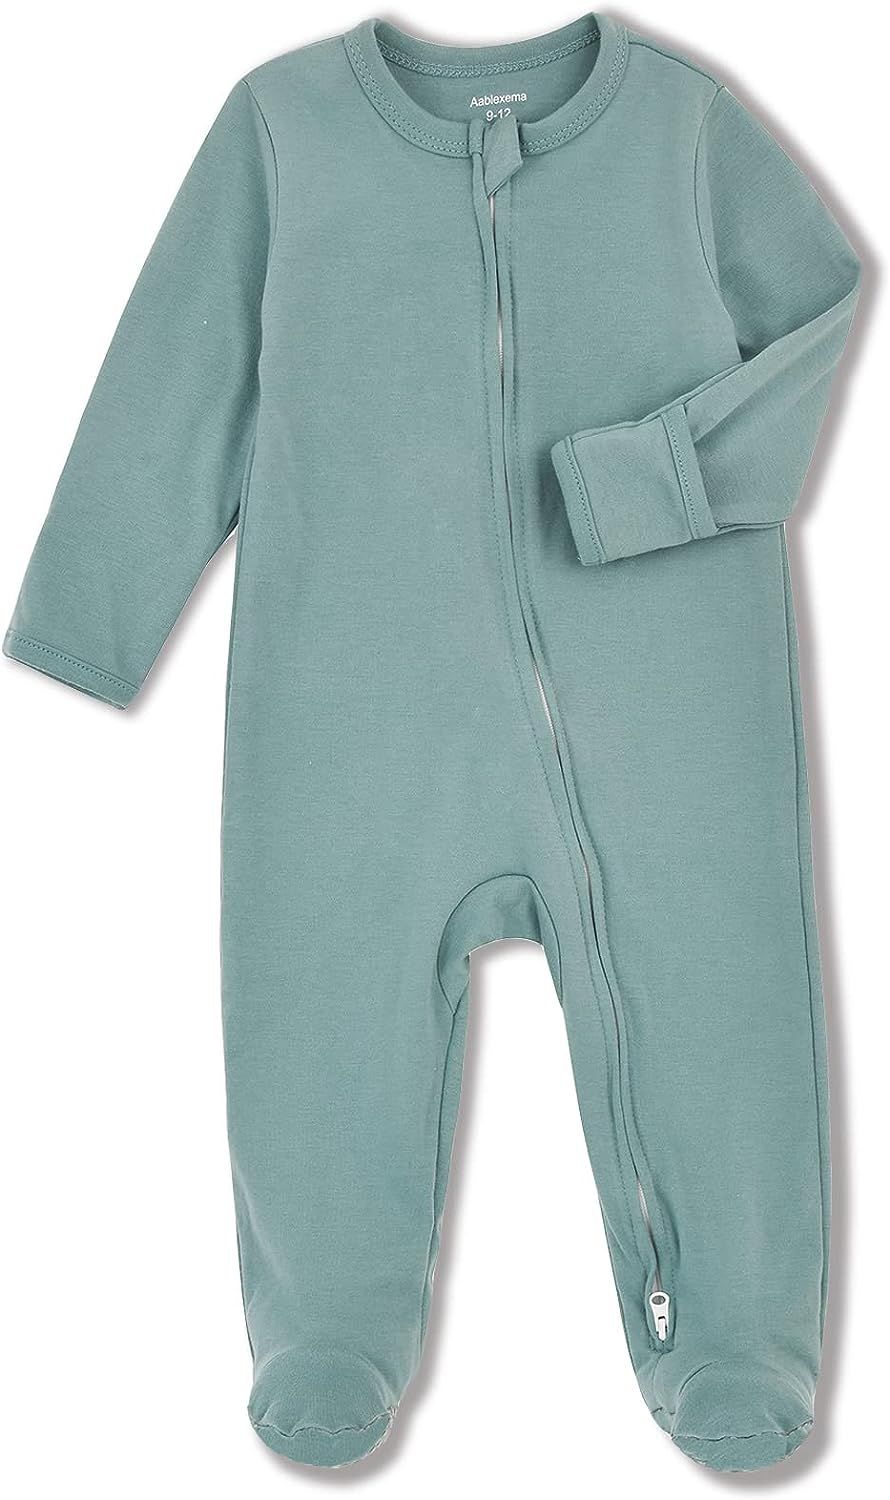 Baby Footed Pajamas with Mitten Cuffs - Unisex Newborn Infant 2 Ways Zipper Cotton Footie Onesies | Amazon (US)